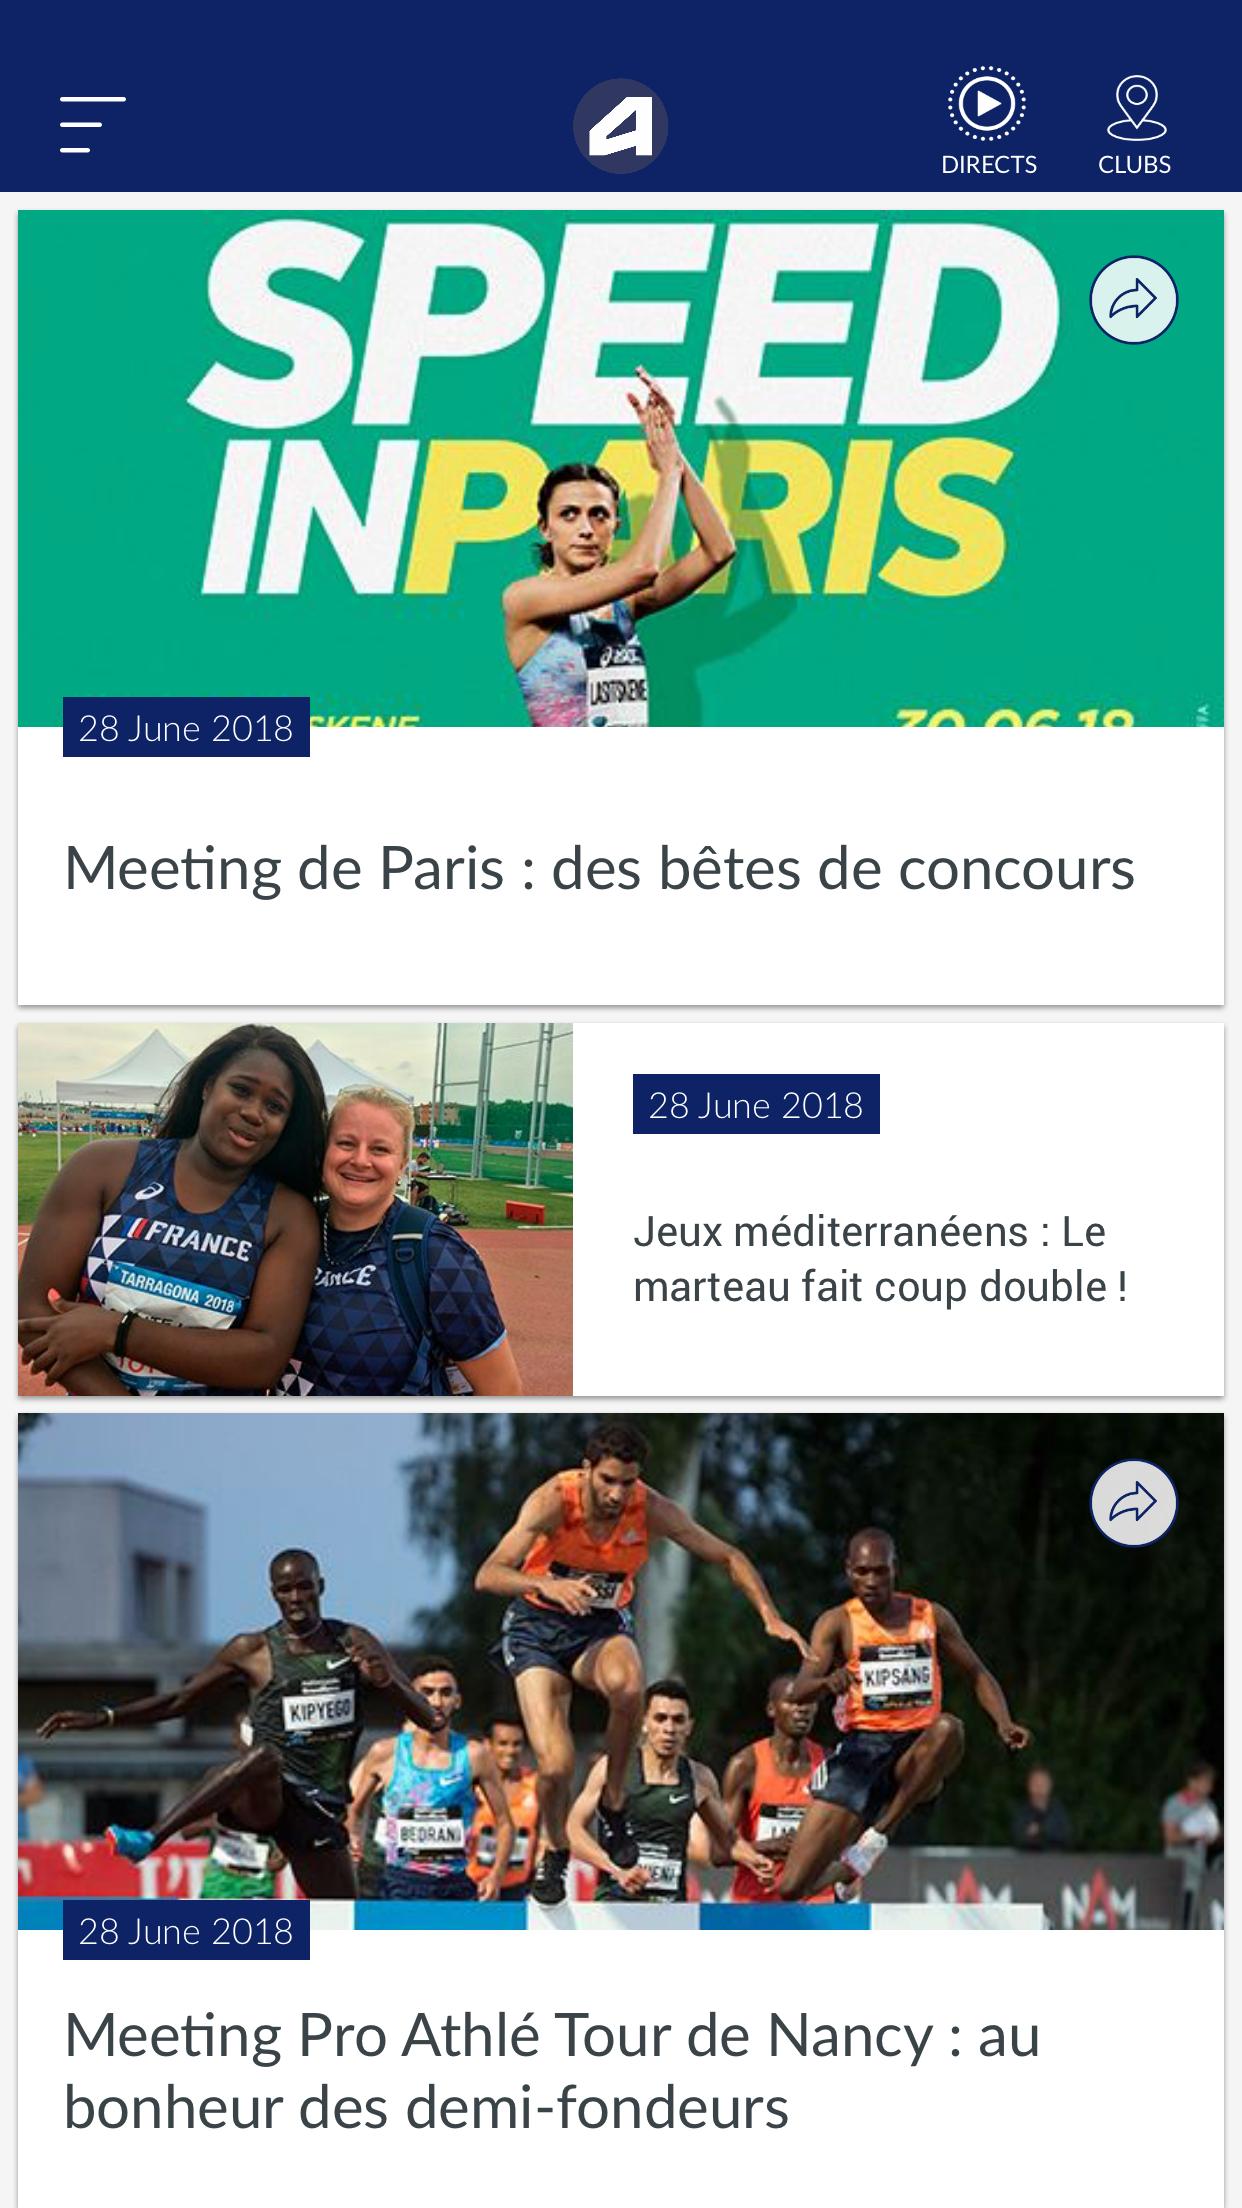 Fédération française d'athlétisme for Android - APK Download